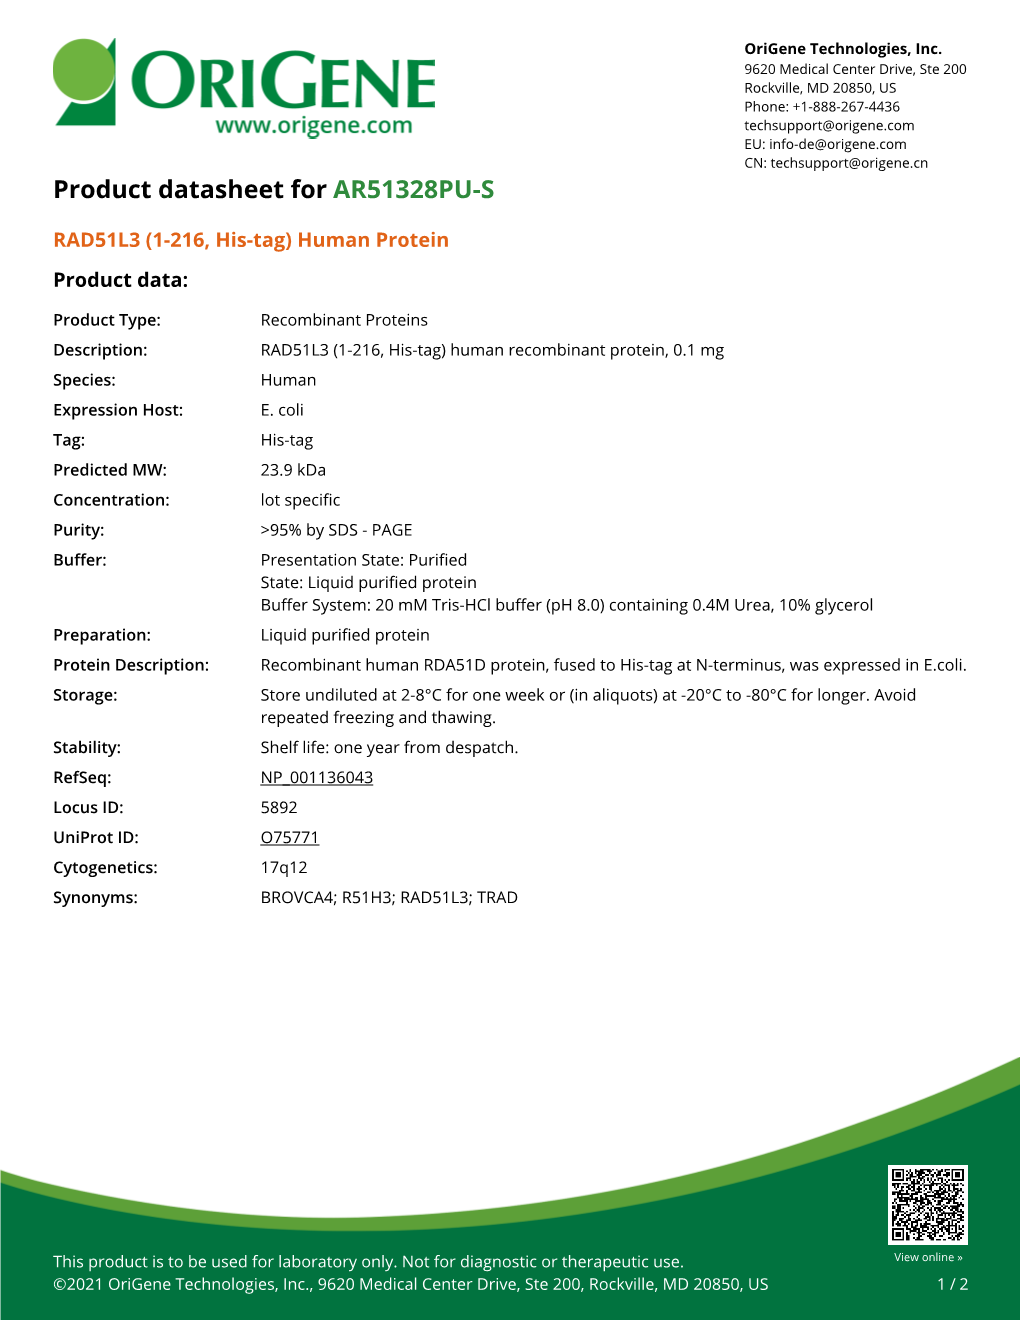 RAD51L3 (1-216, His-Tag) Human Protein – AR51328PU-S | Origene